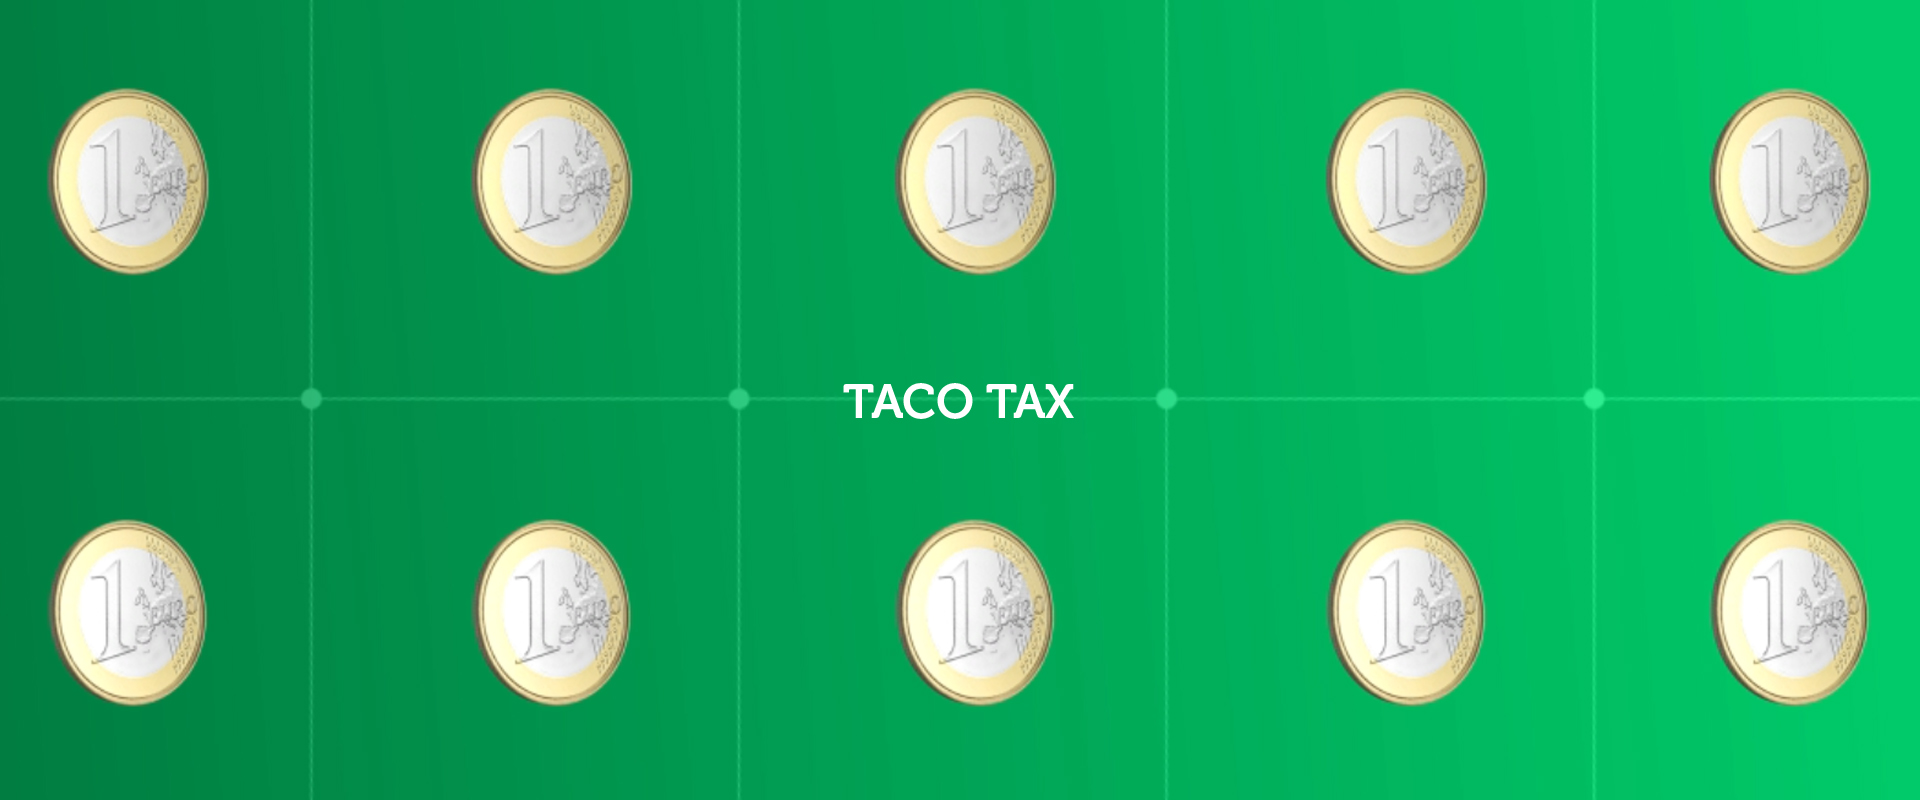 Taco Tax